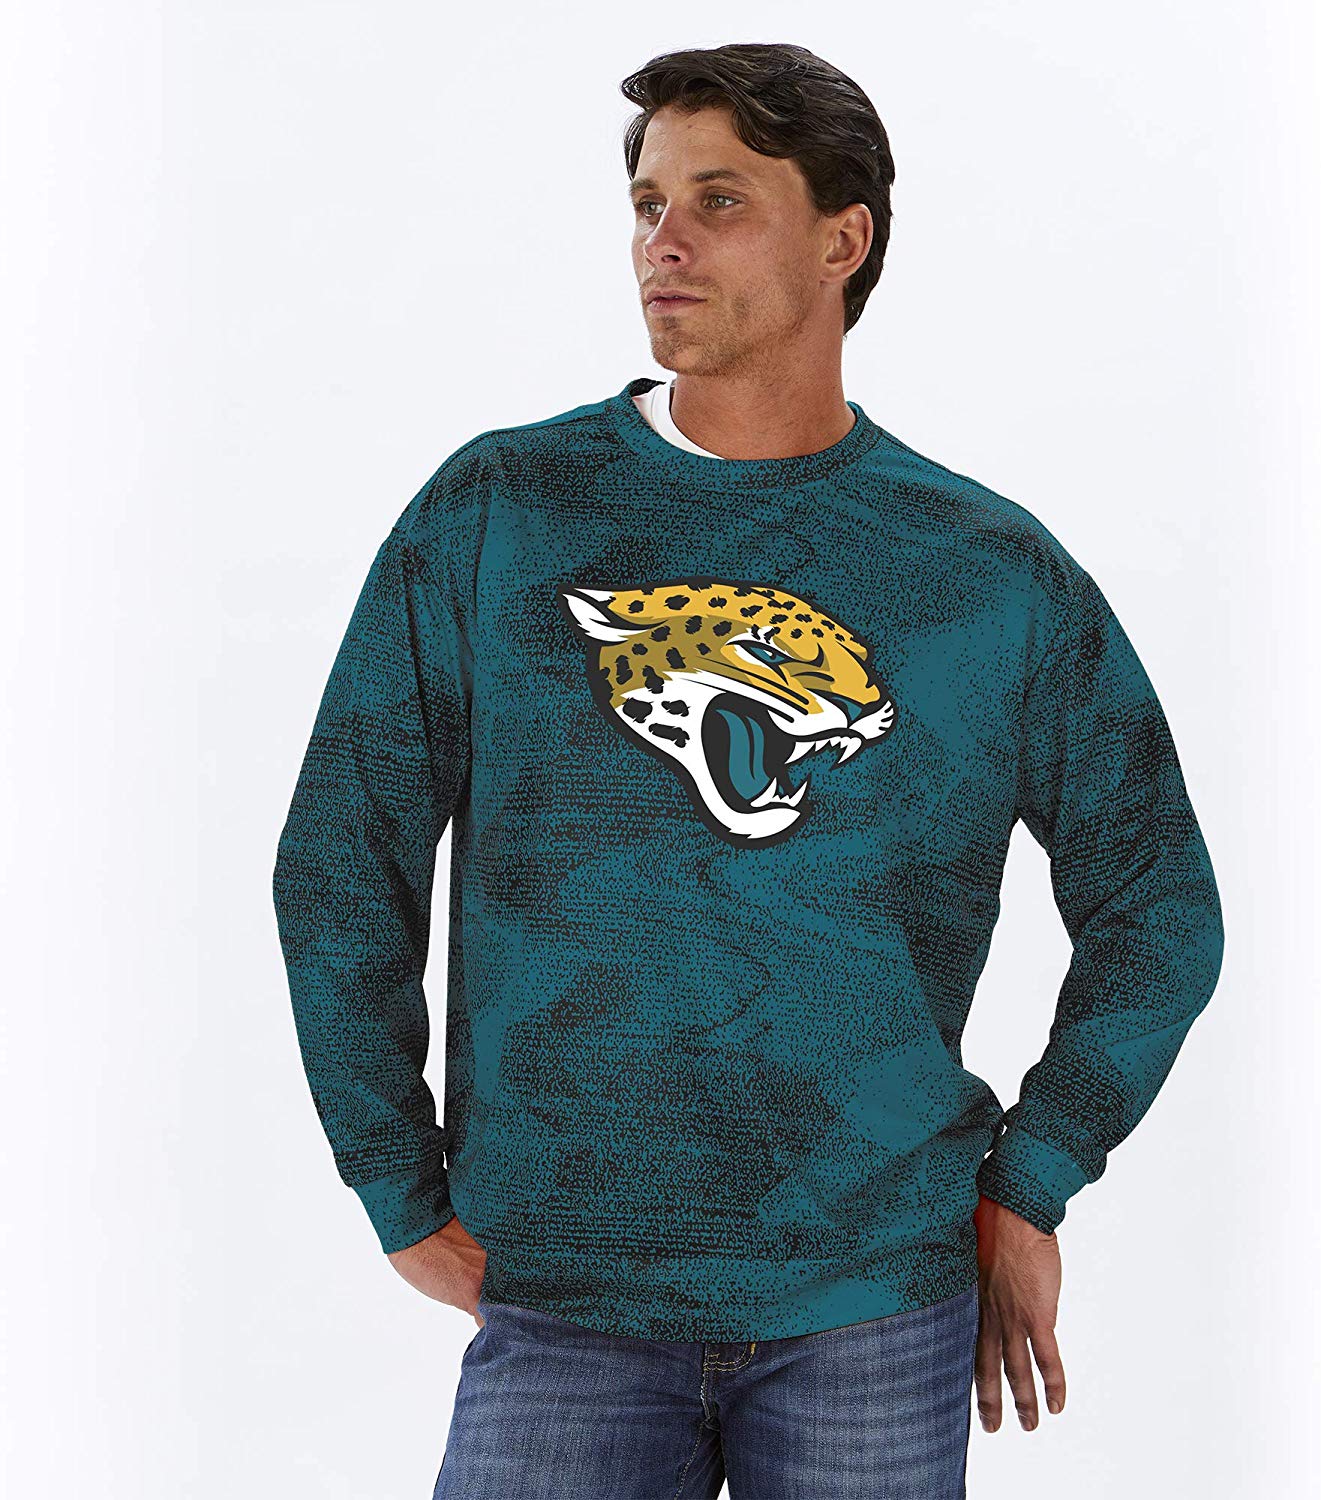 jacksonville jaguars sweatshirt